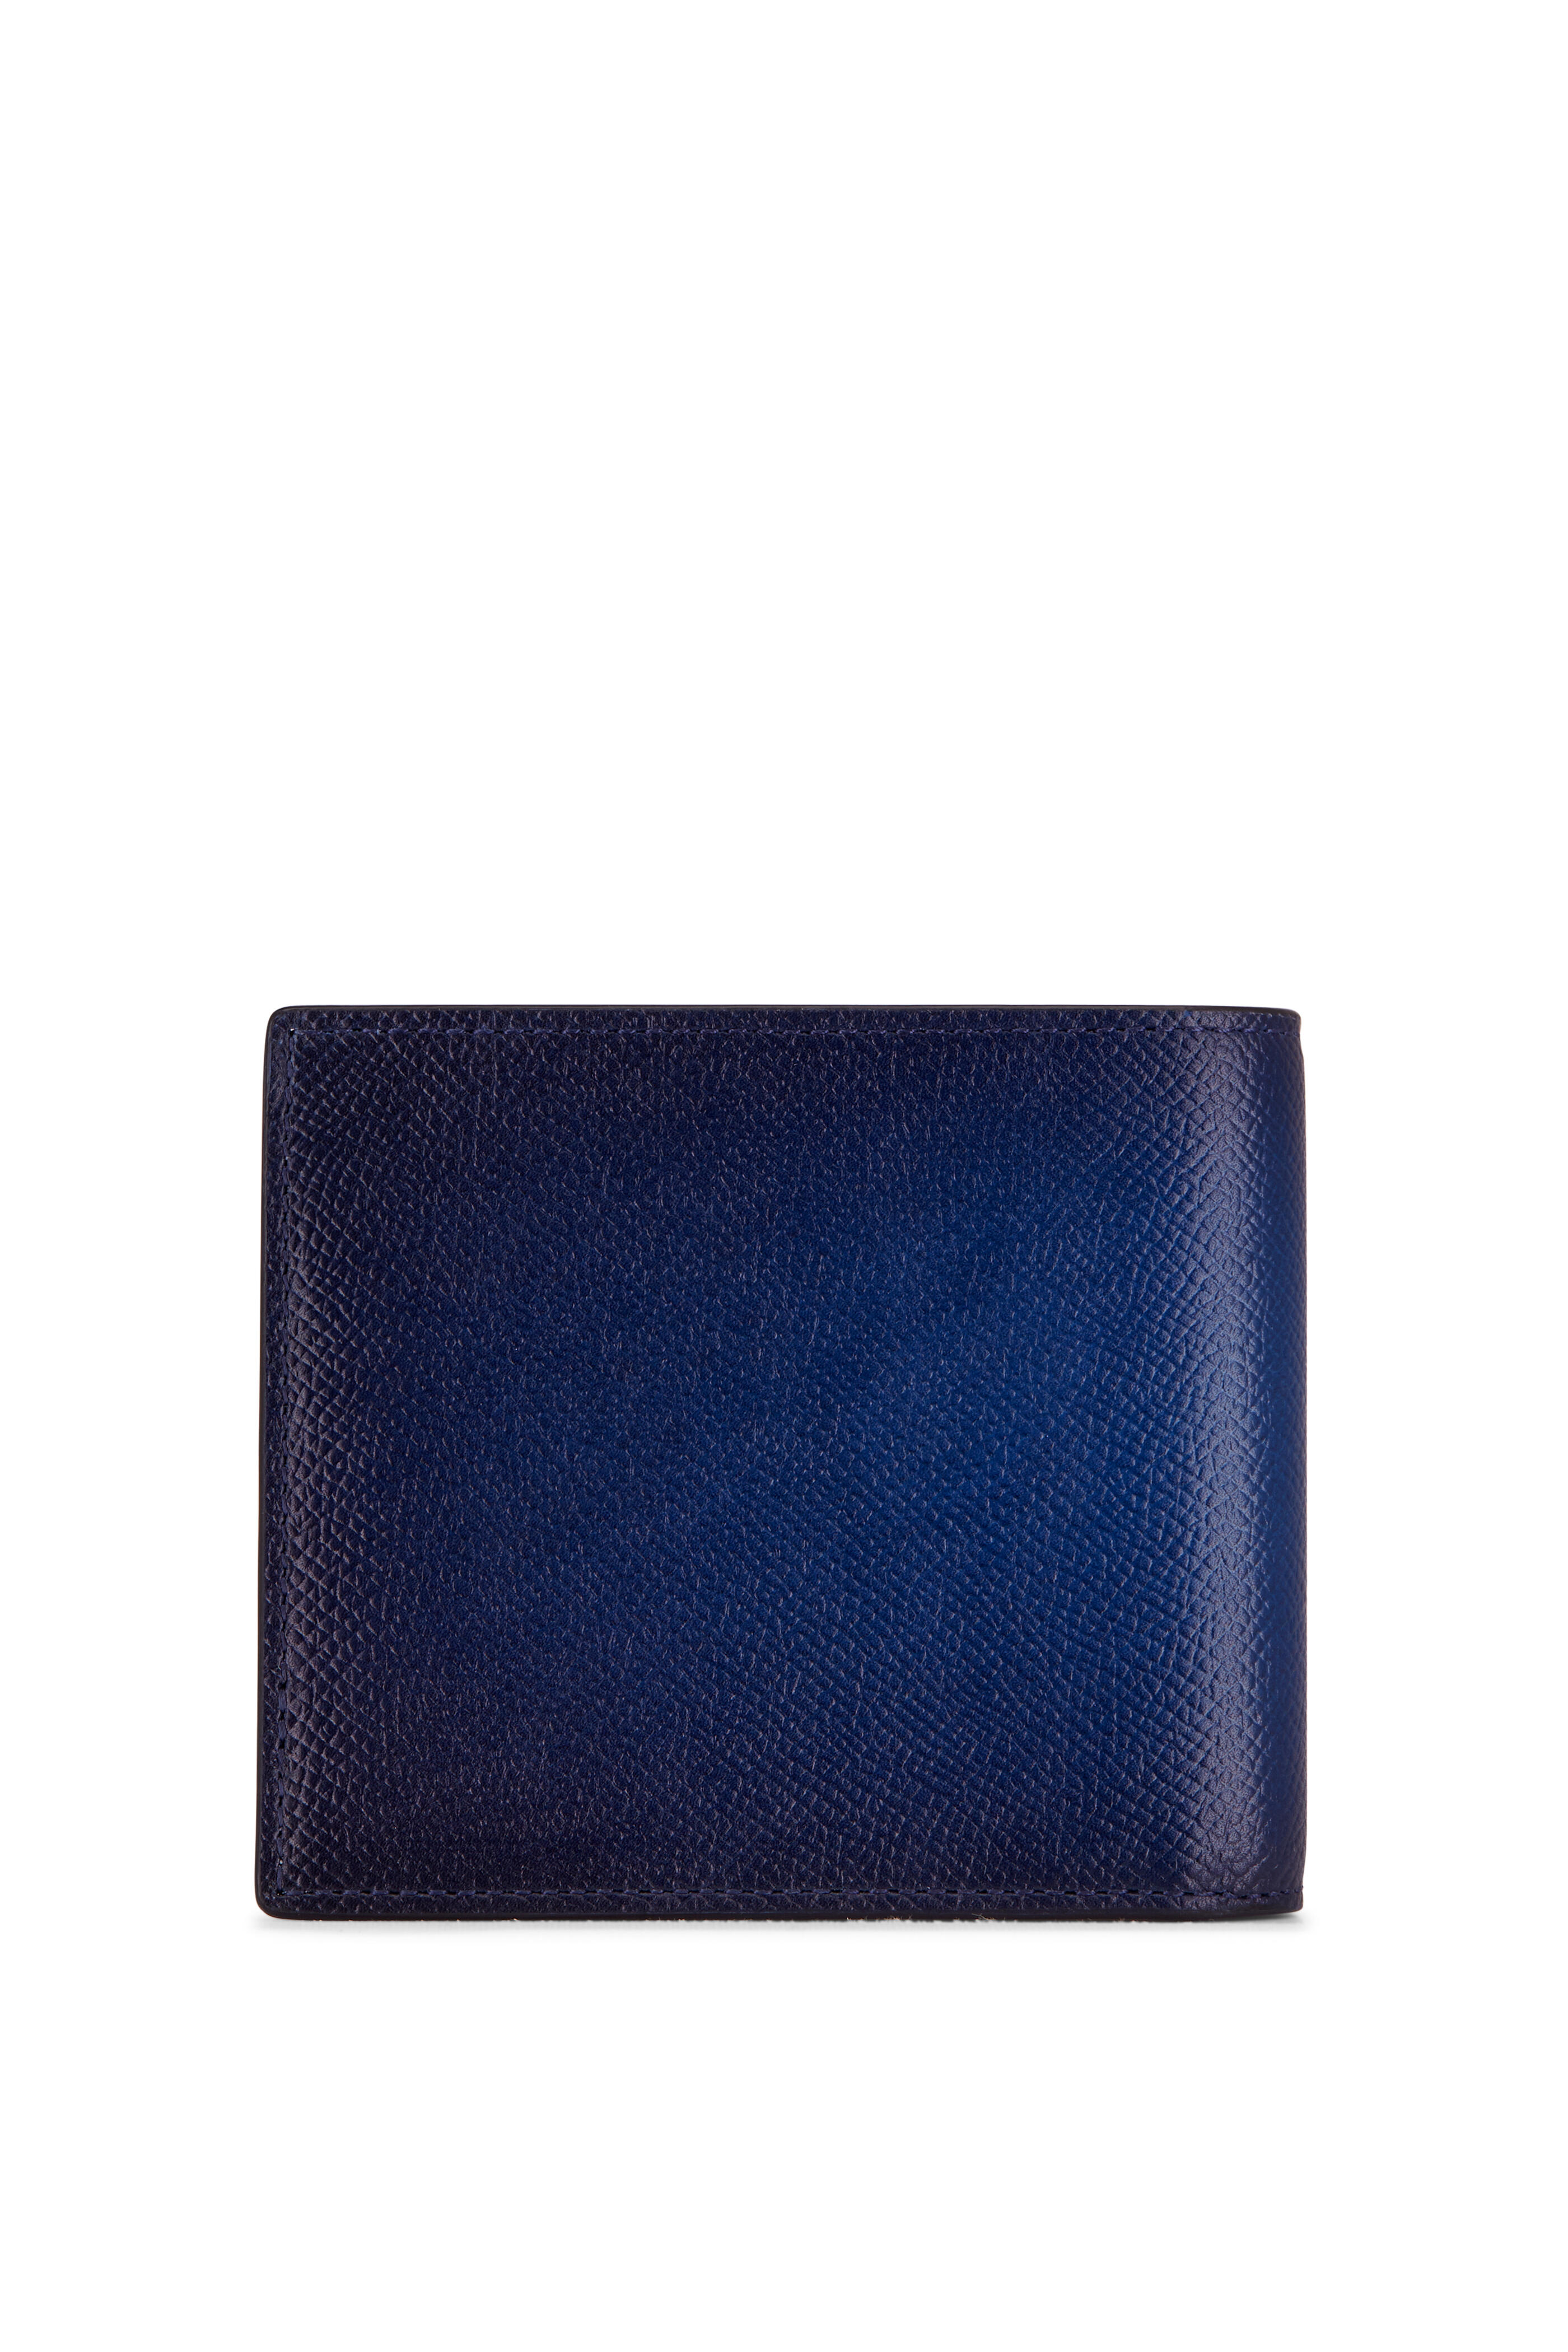 Blue Plain Mens Bi Fold Designer Leather Wallet, For Personal